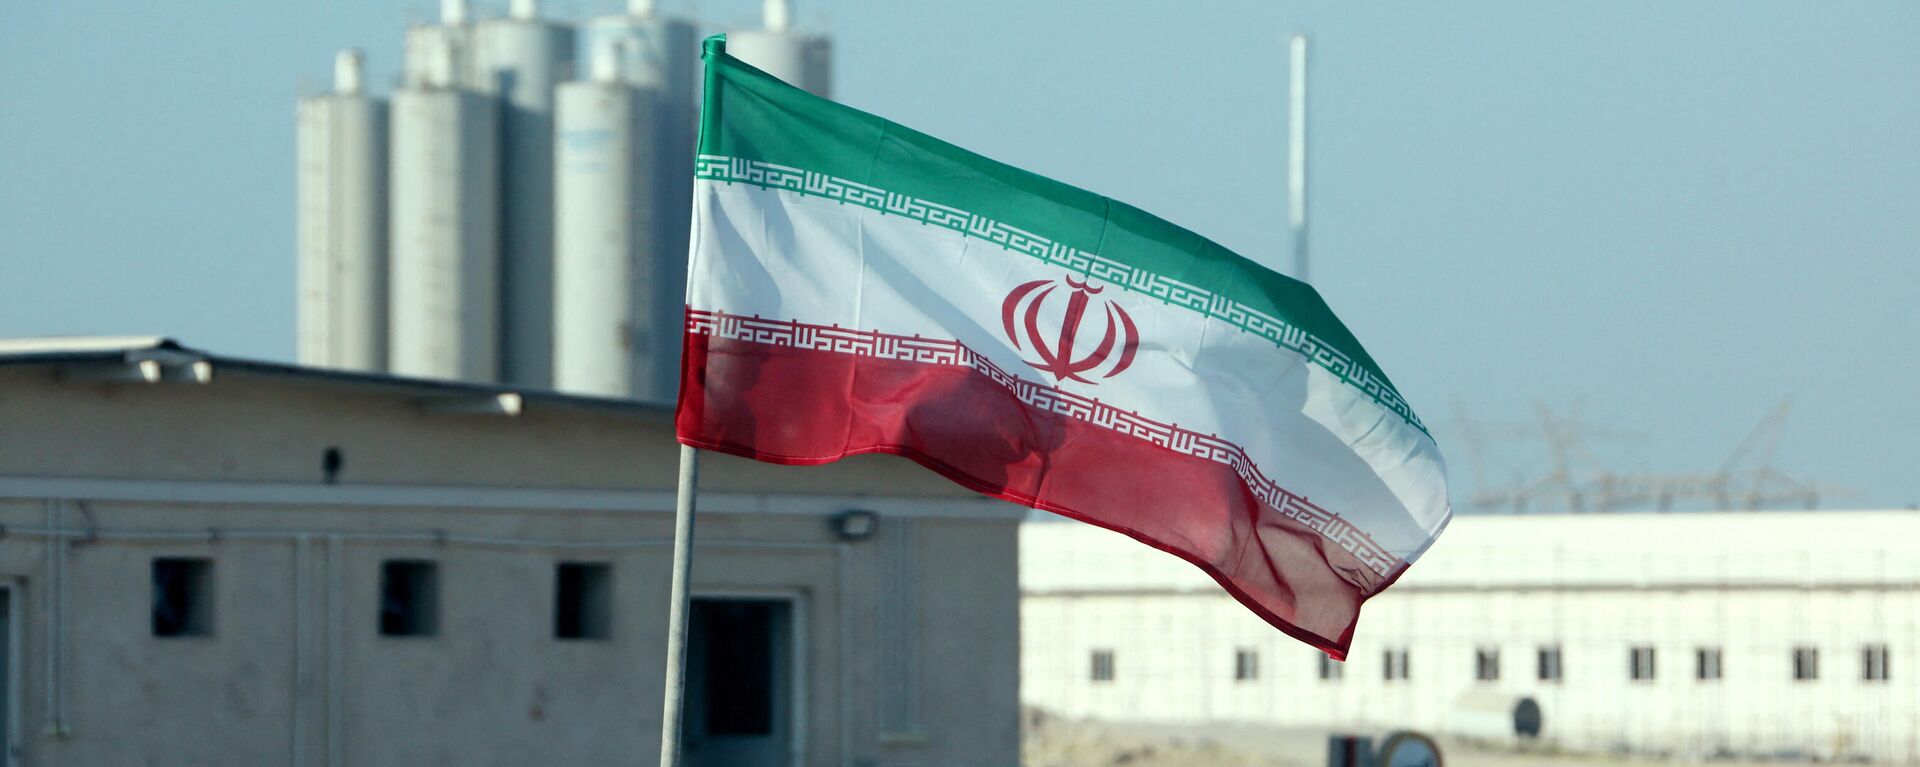 La bandera de Irán frente a una planta nuclear (archivo) - Sputnik Mundo, 1920, 13.04.2021